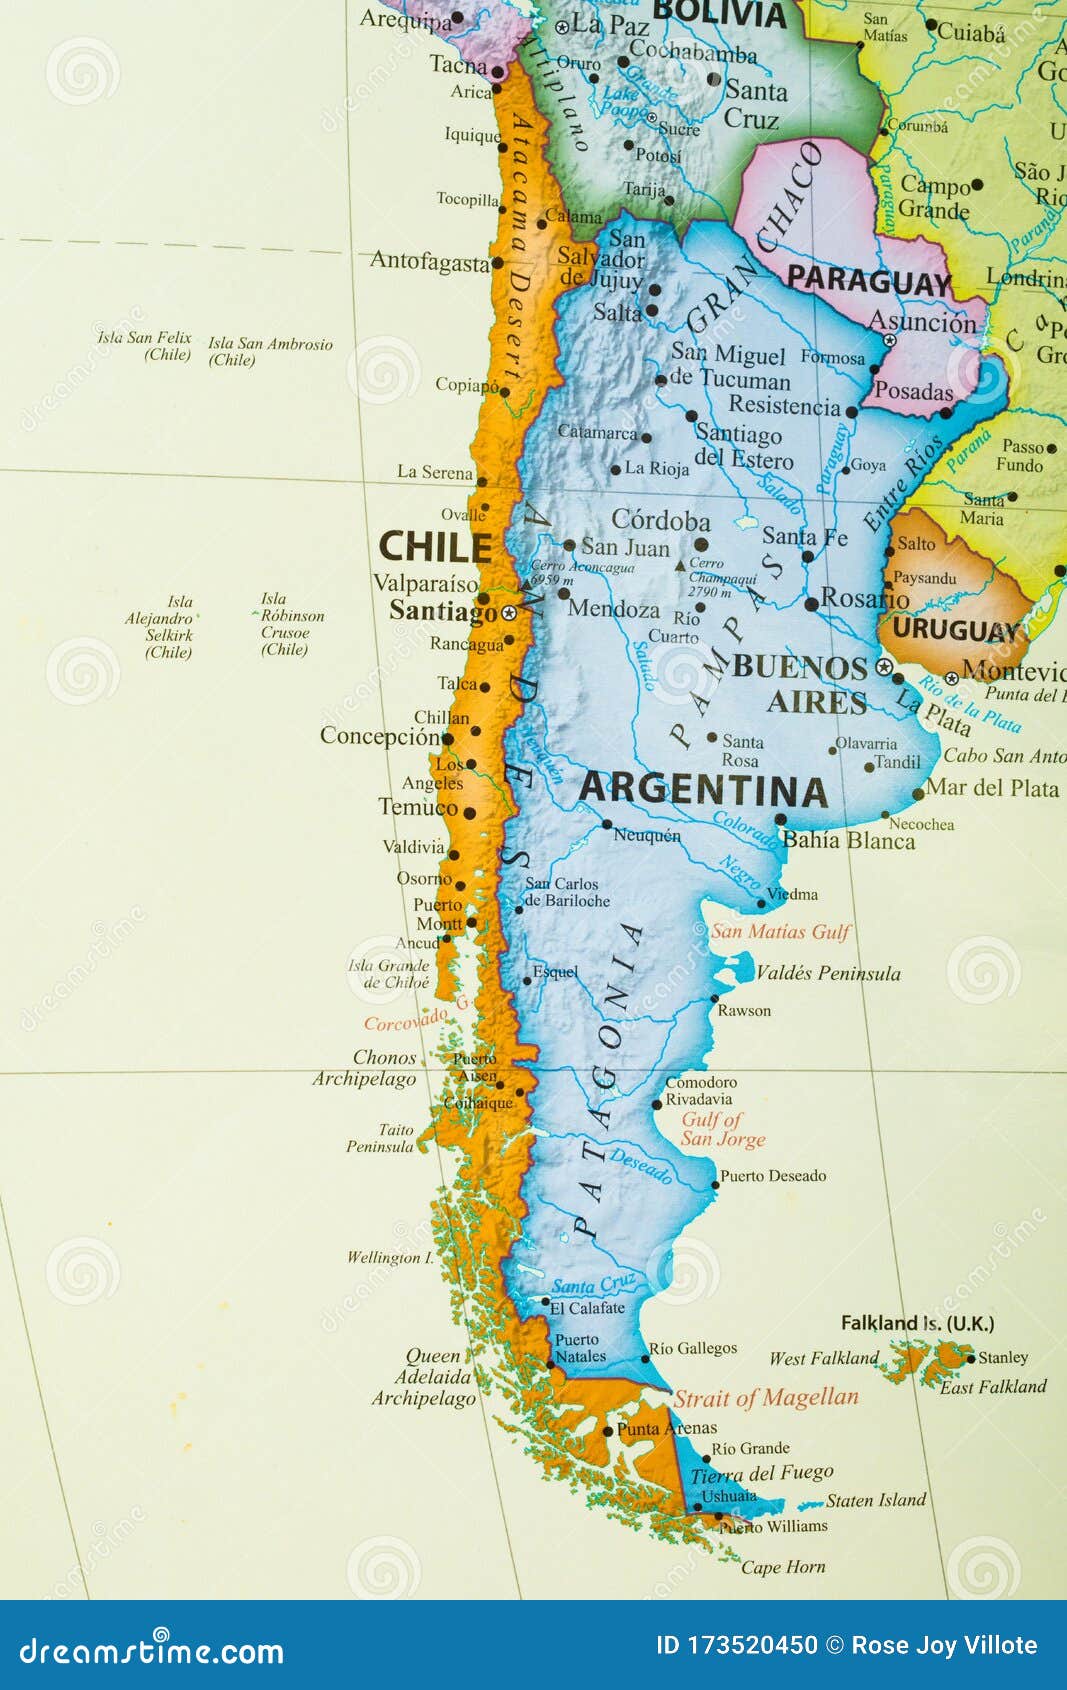 https://thumbs.dreamstime.com/z/mapa-do-chile-e-da-argentina-na-am%C3%A9rica-sul-sua-capital-%C3%A9-santiago-buenos-aires-173520450.jpg